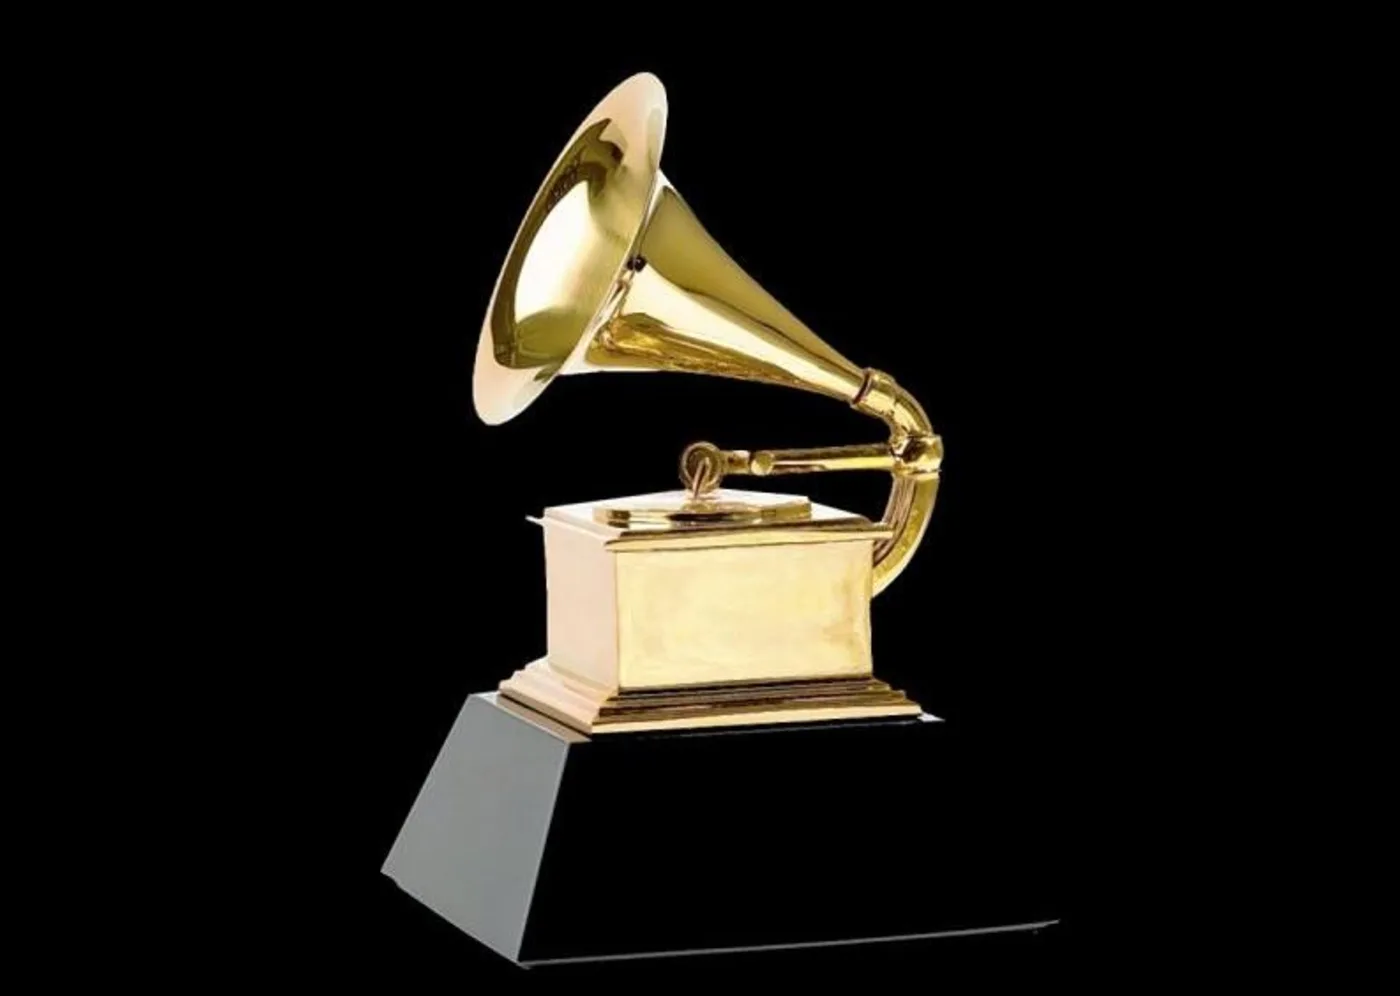 Βραβεία Grammy 2023